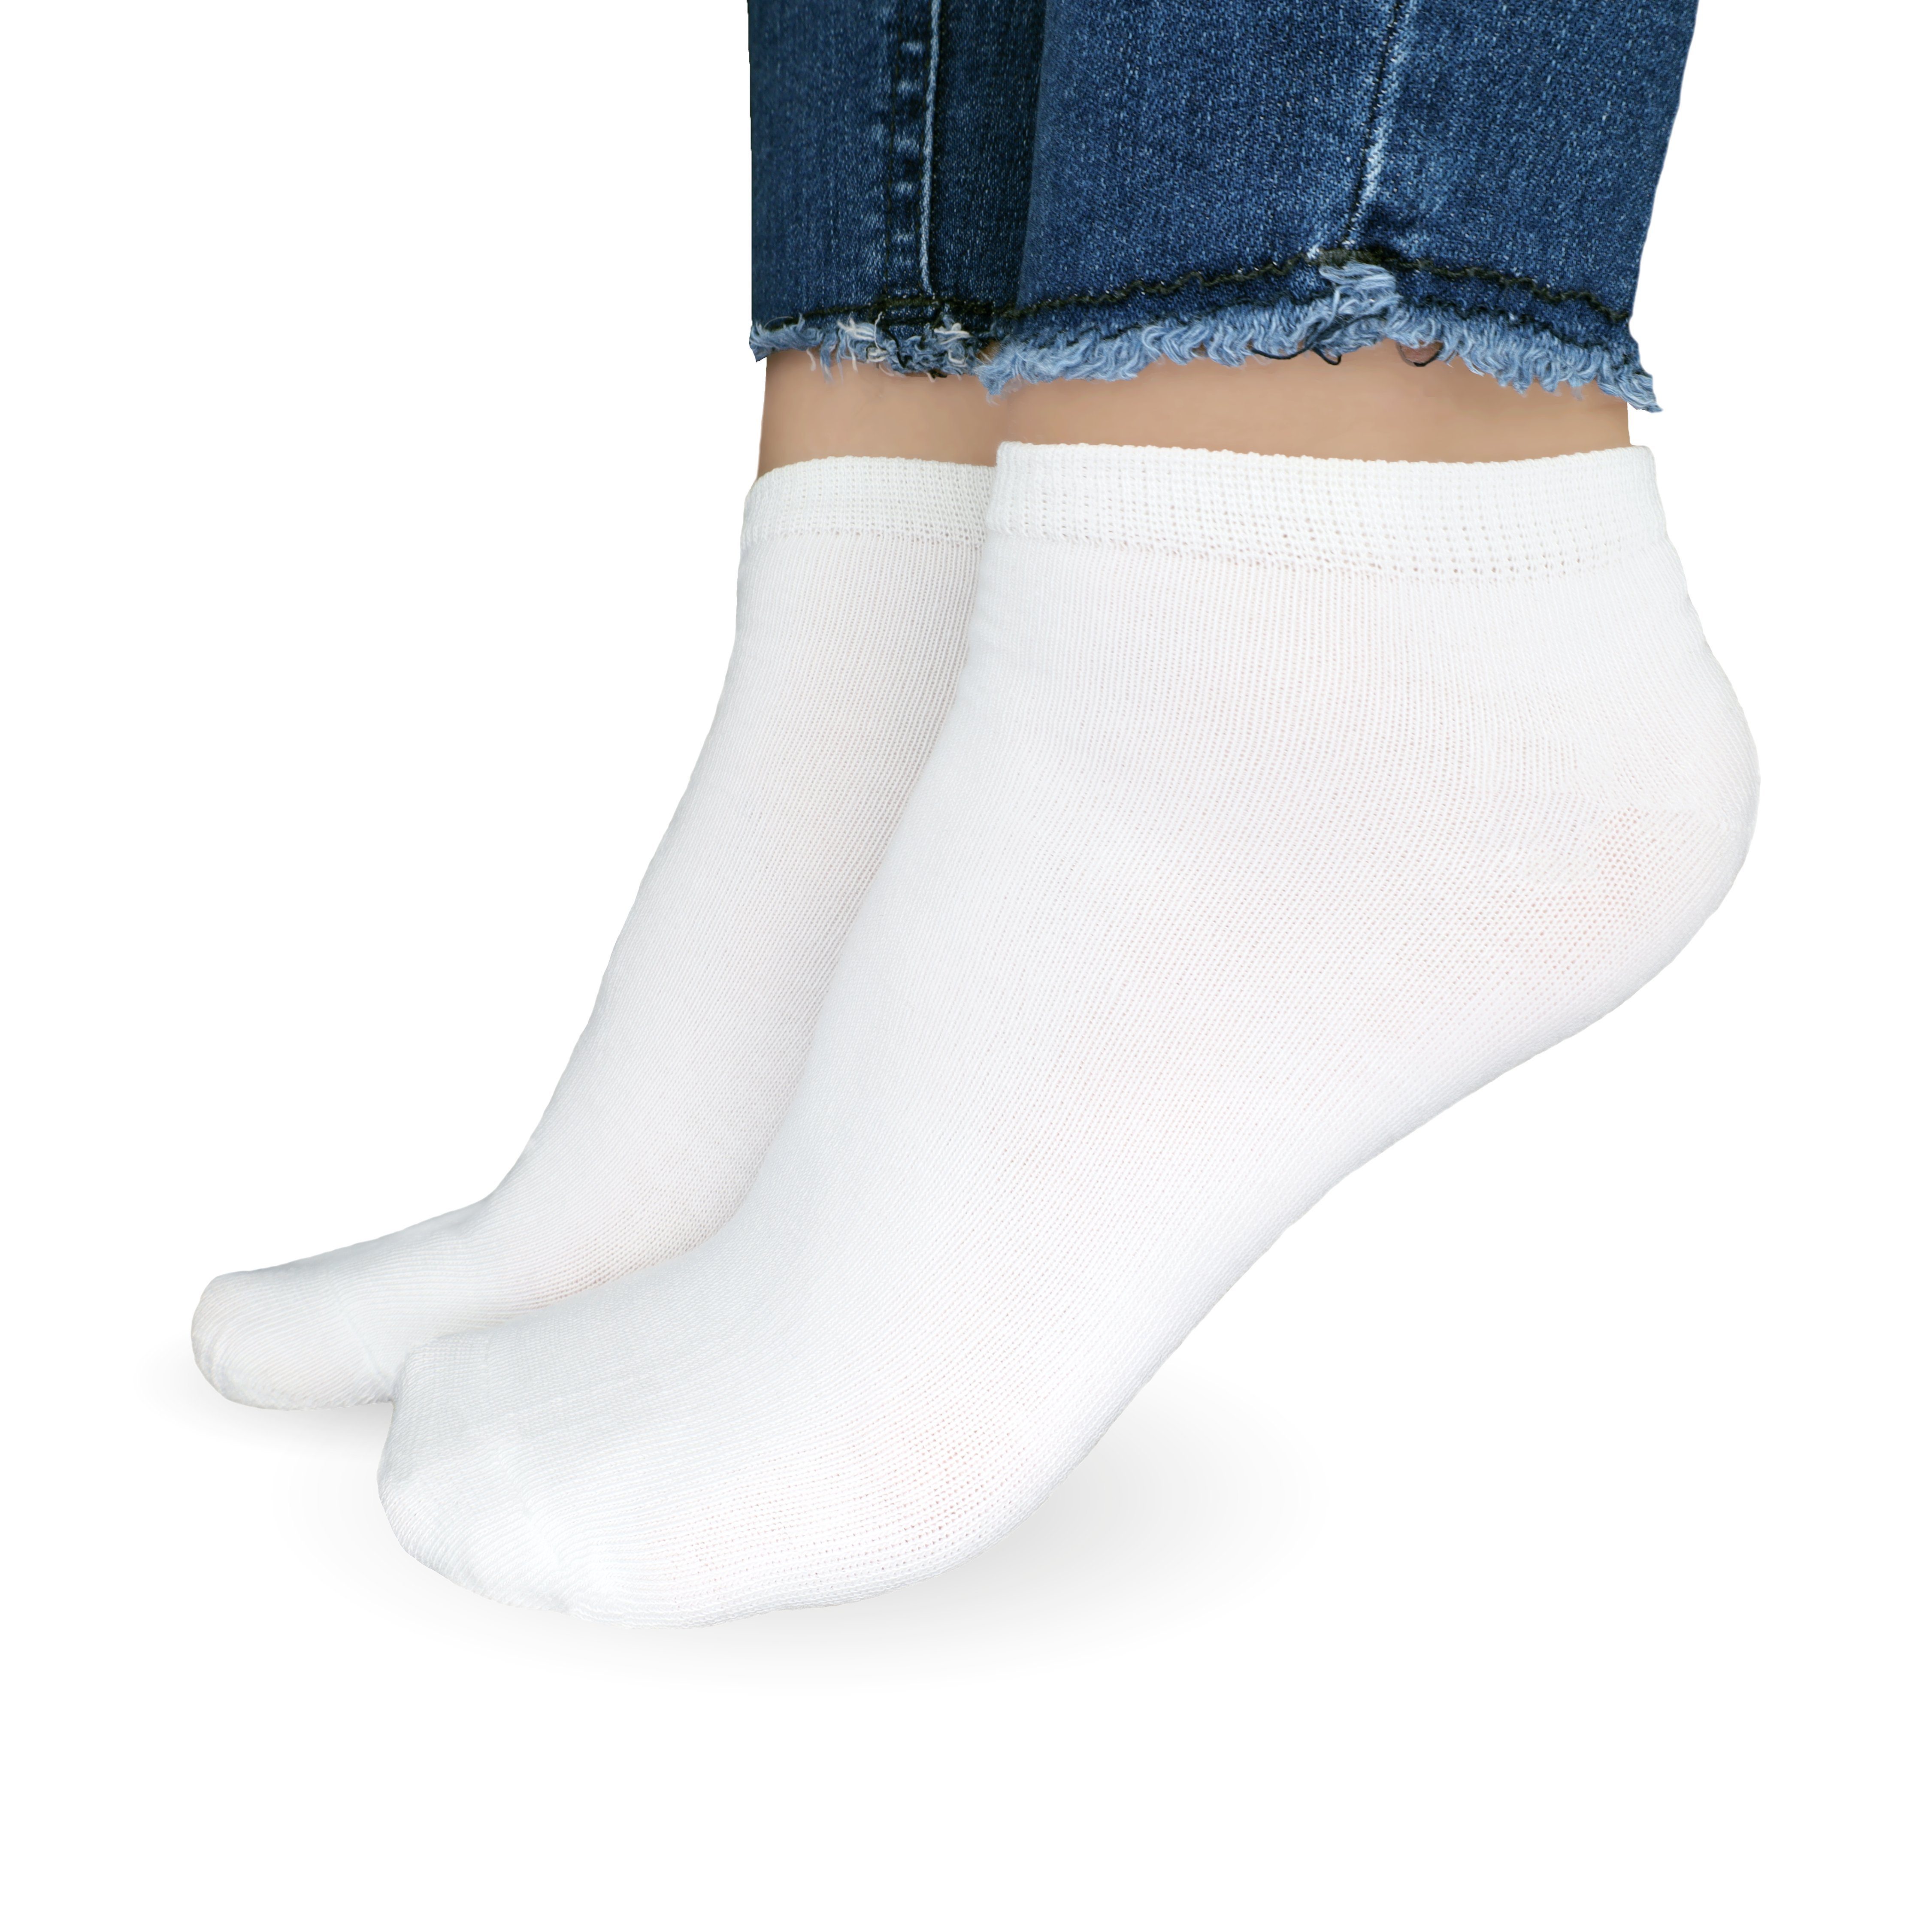 & Sneaker 5-20 Unisex 10x Damen Freizeitsocken Socken Weiß 35-46, Paar) aus Baumwolle atmungsaktive SO.I Herren Socken (Größen